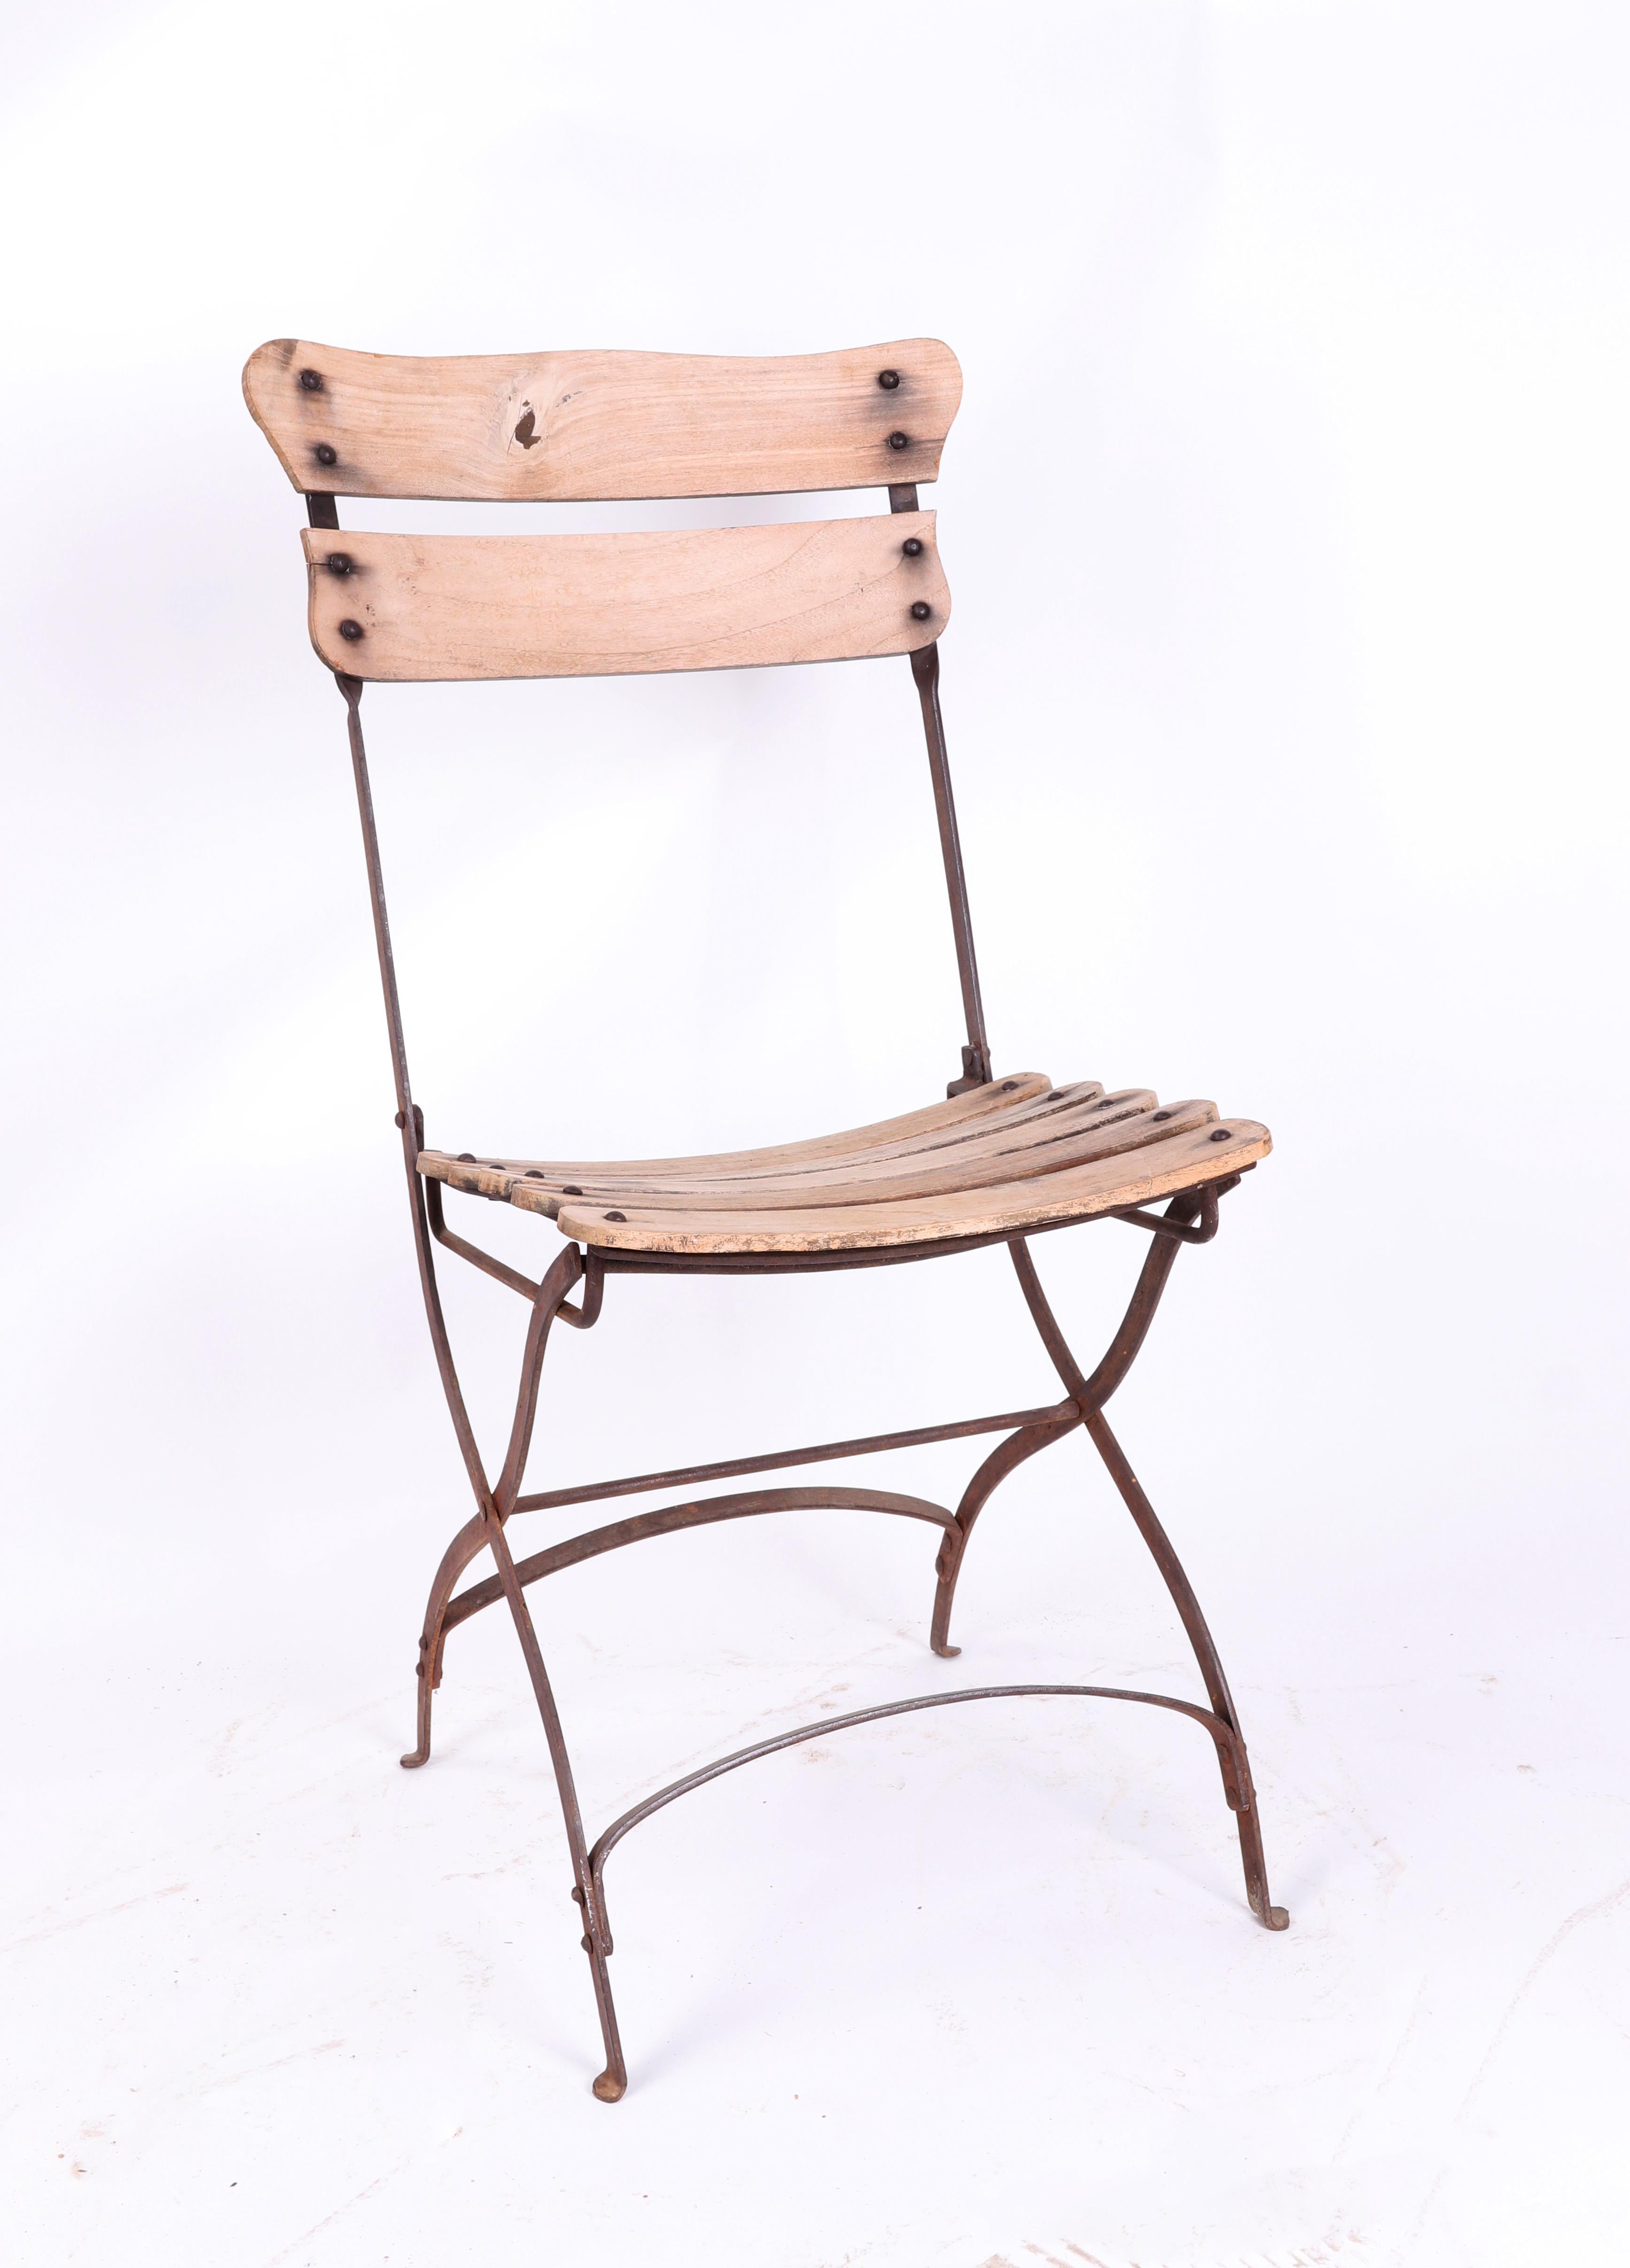 Conjunto de sillas francesas para jardin de los años 1950 de madera e hierro.